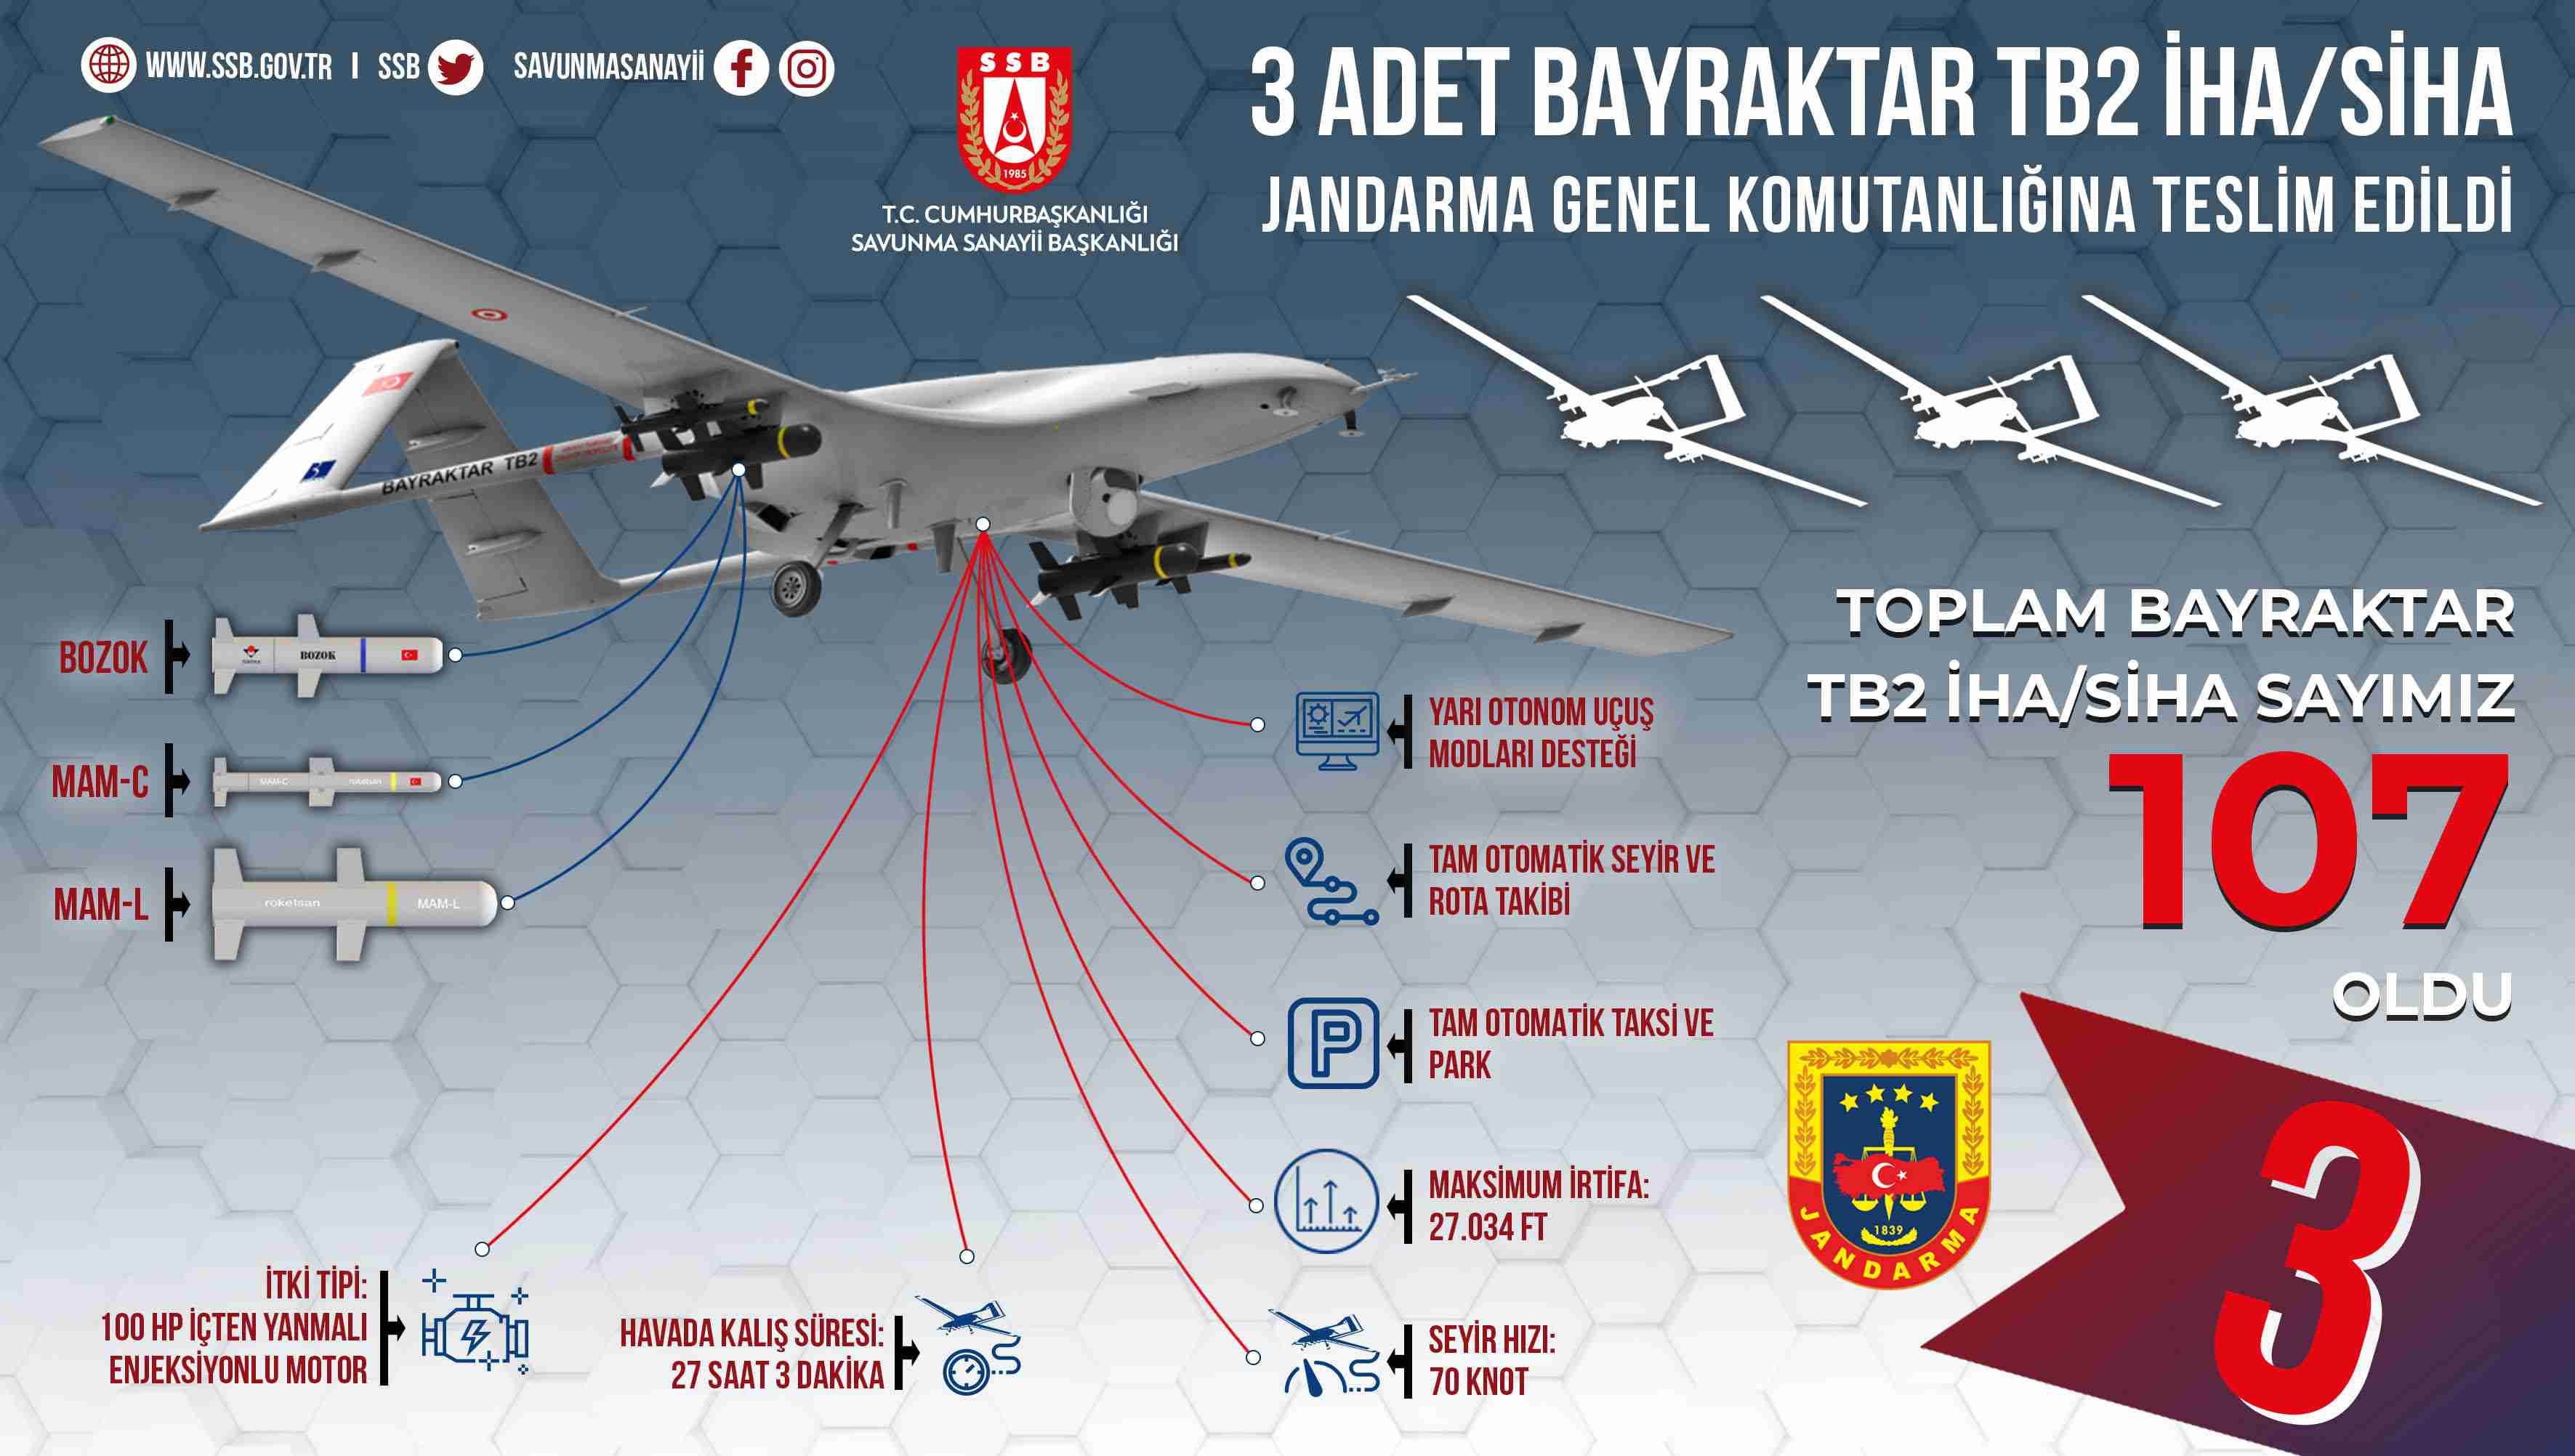 Jandarma'ya 3 adet Bayraktar TB2 teslim edildi